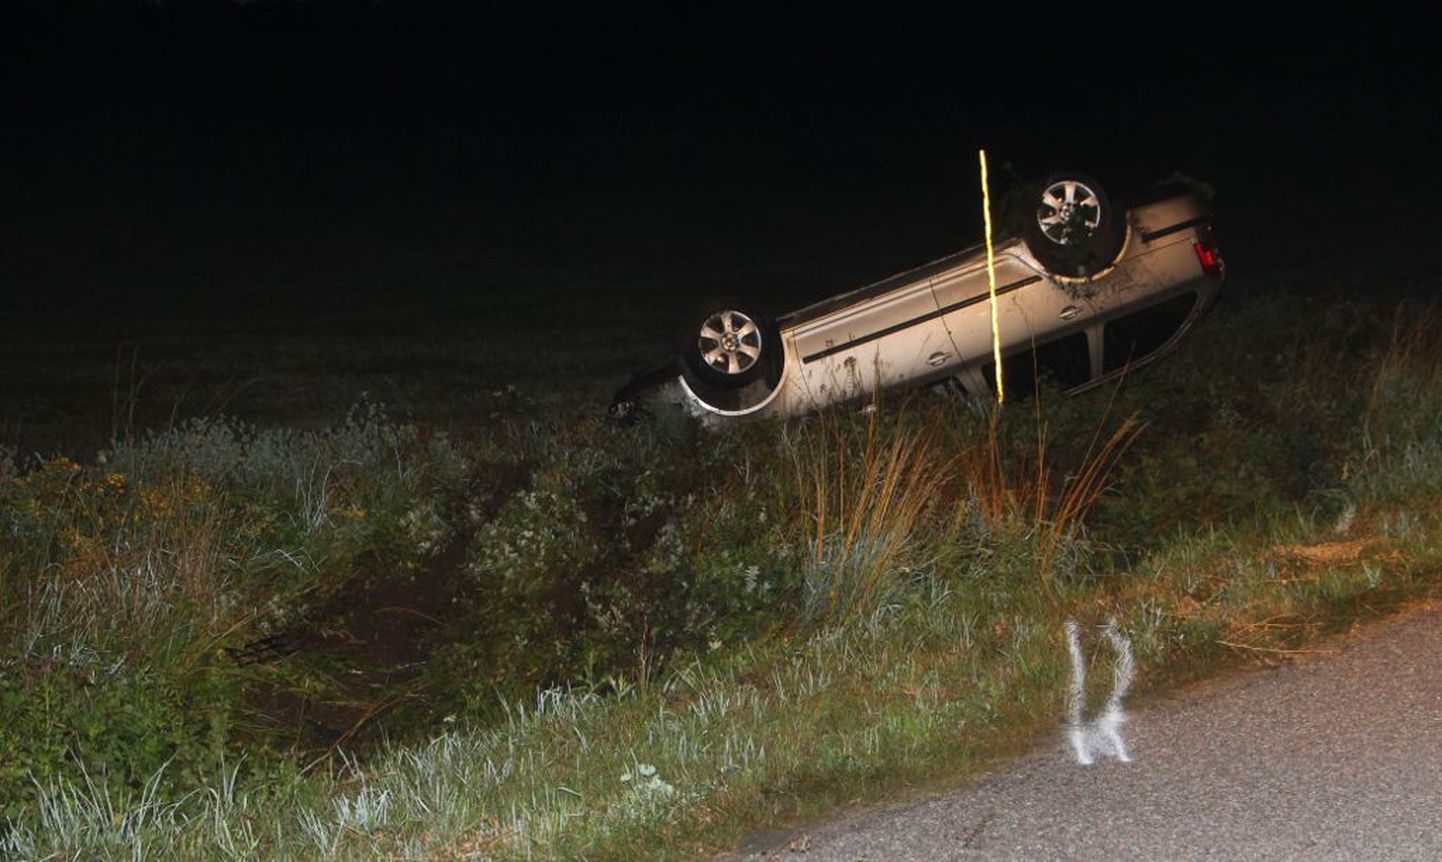 Saaremaal hukkus liiklusõnnetuses 27-aastane naine, kes paiskus avarii tagajärjel sõiduautost välja.